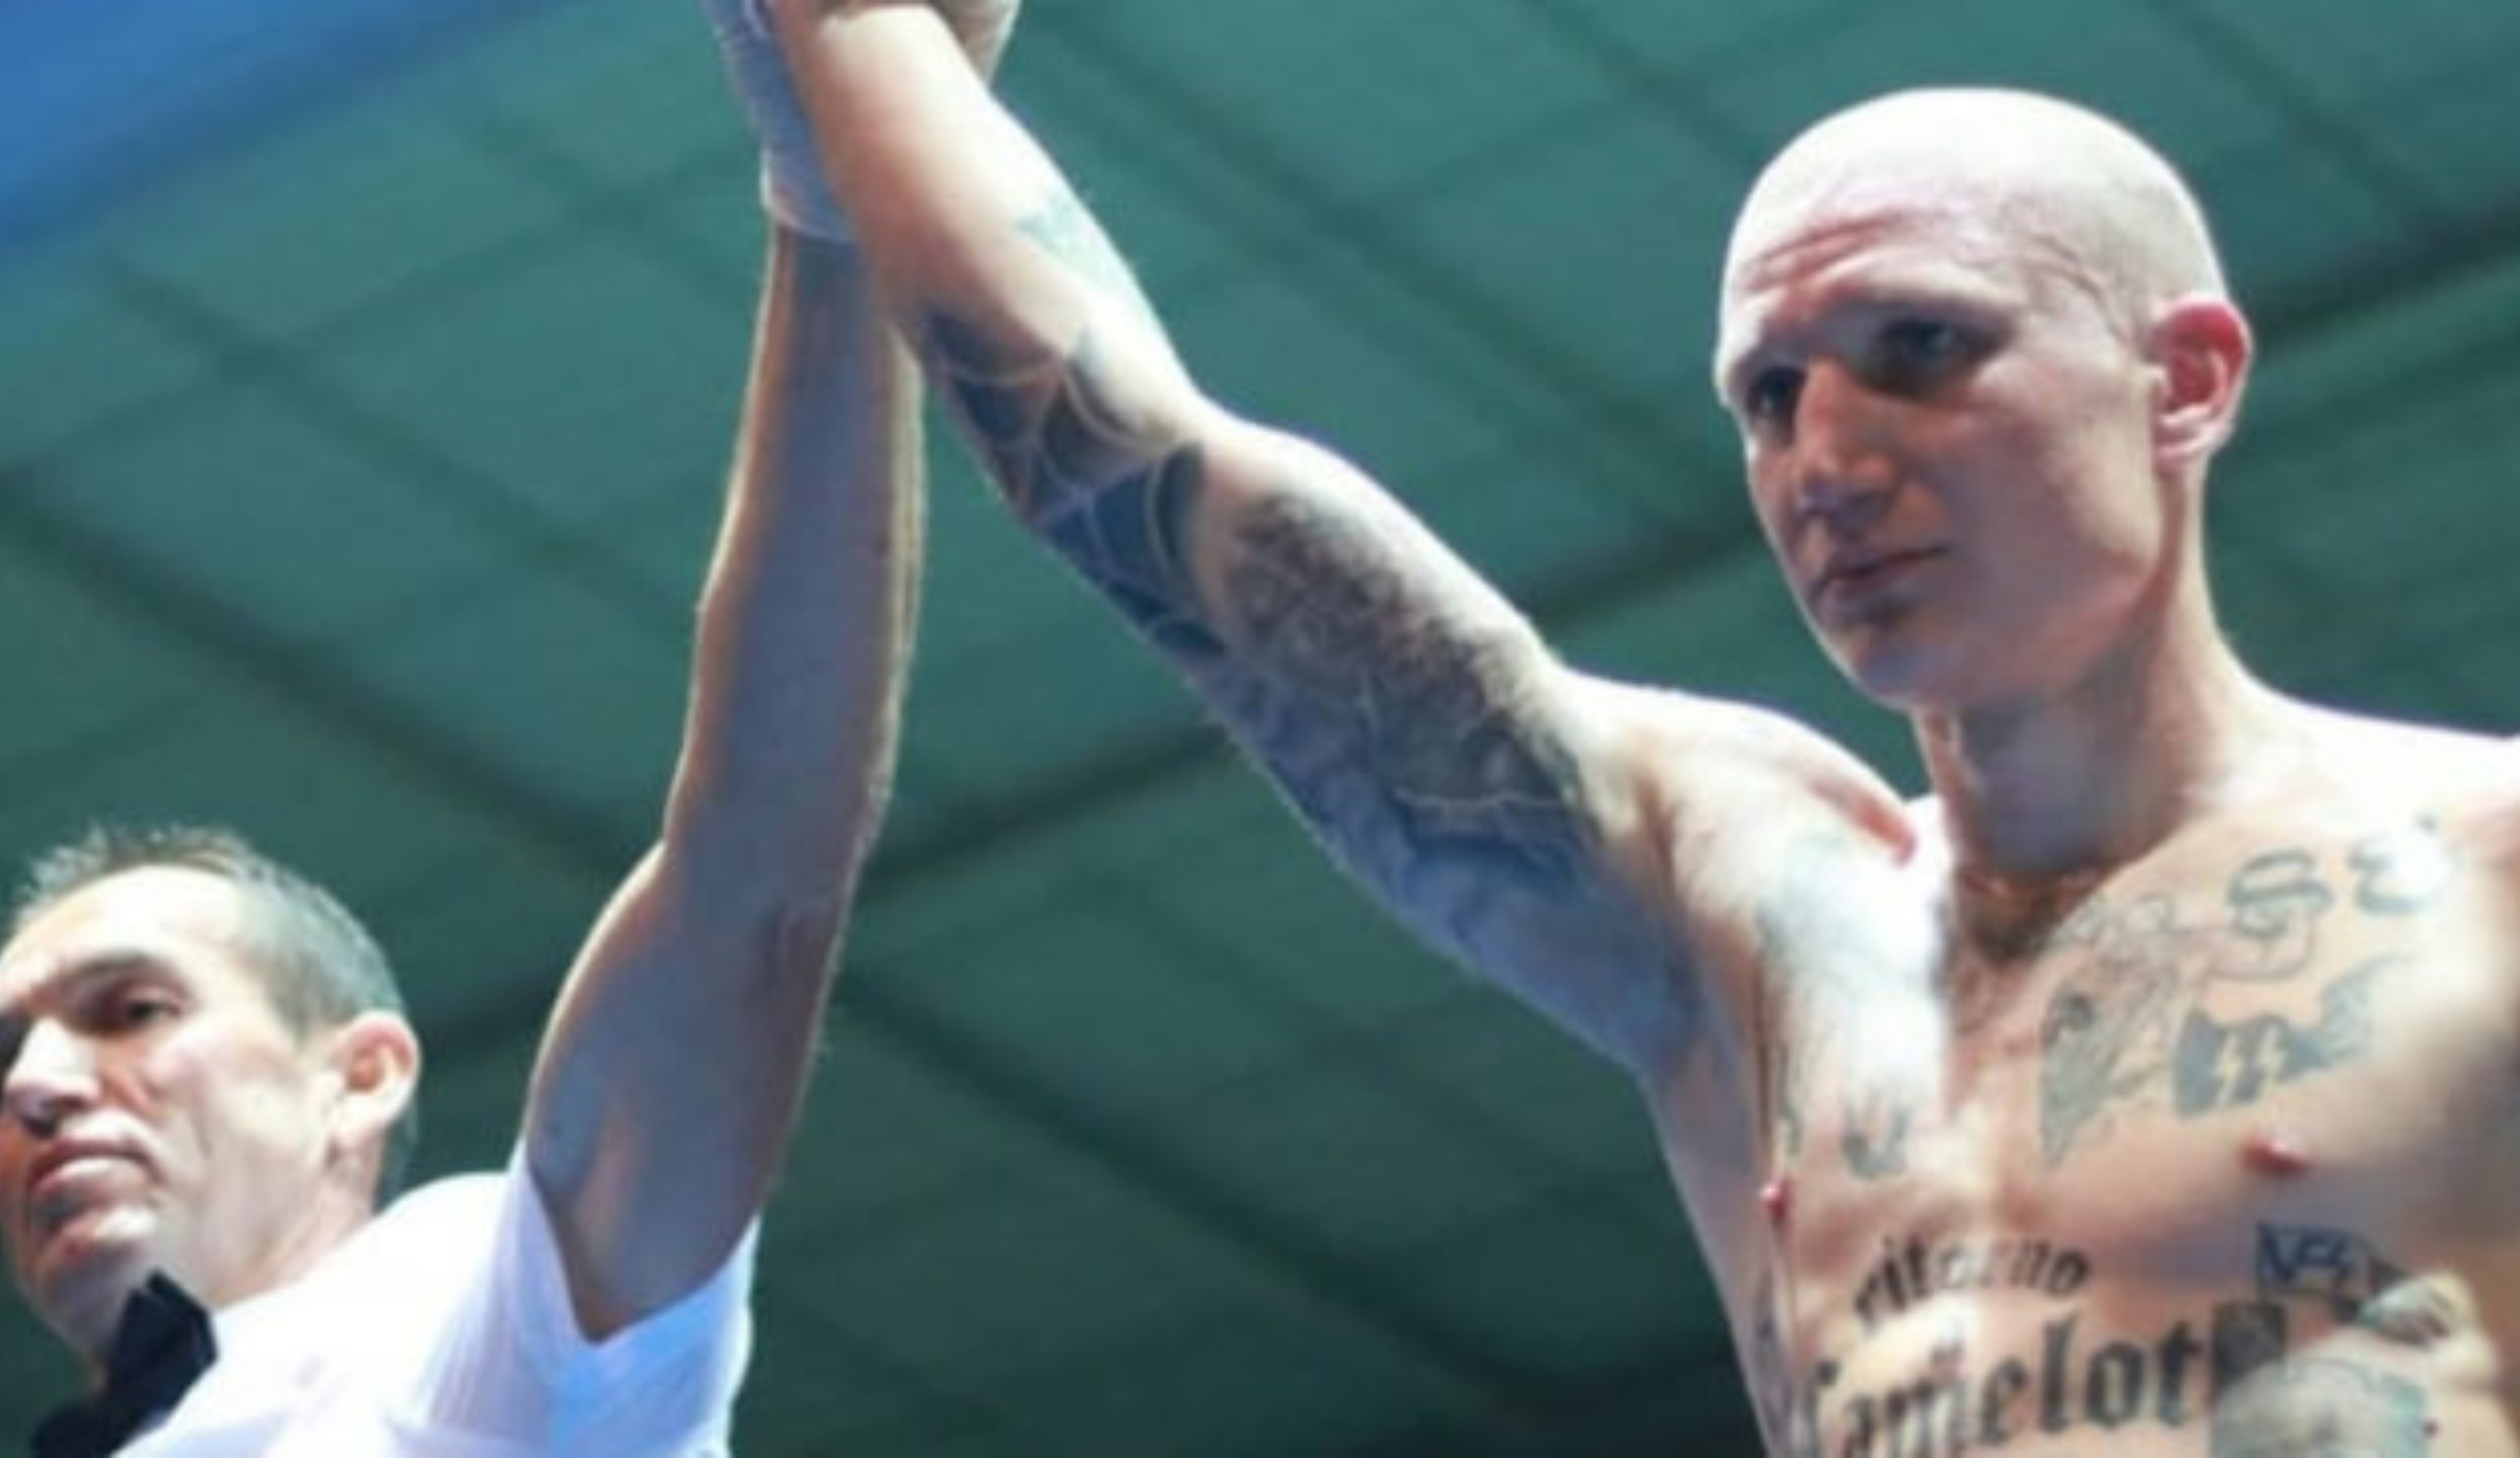 Michele Broili y sus tatuajes nazis en el ring de Trieste por el título de superpiuma italiano: el juego de culpas de la federación. Foto redes sociales.